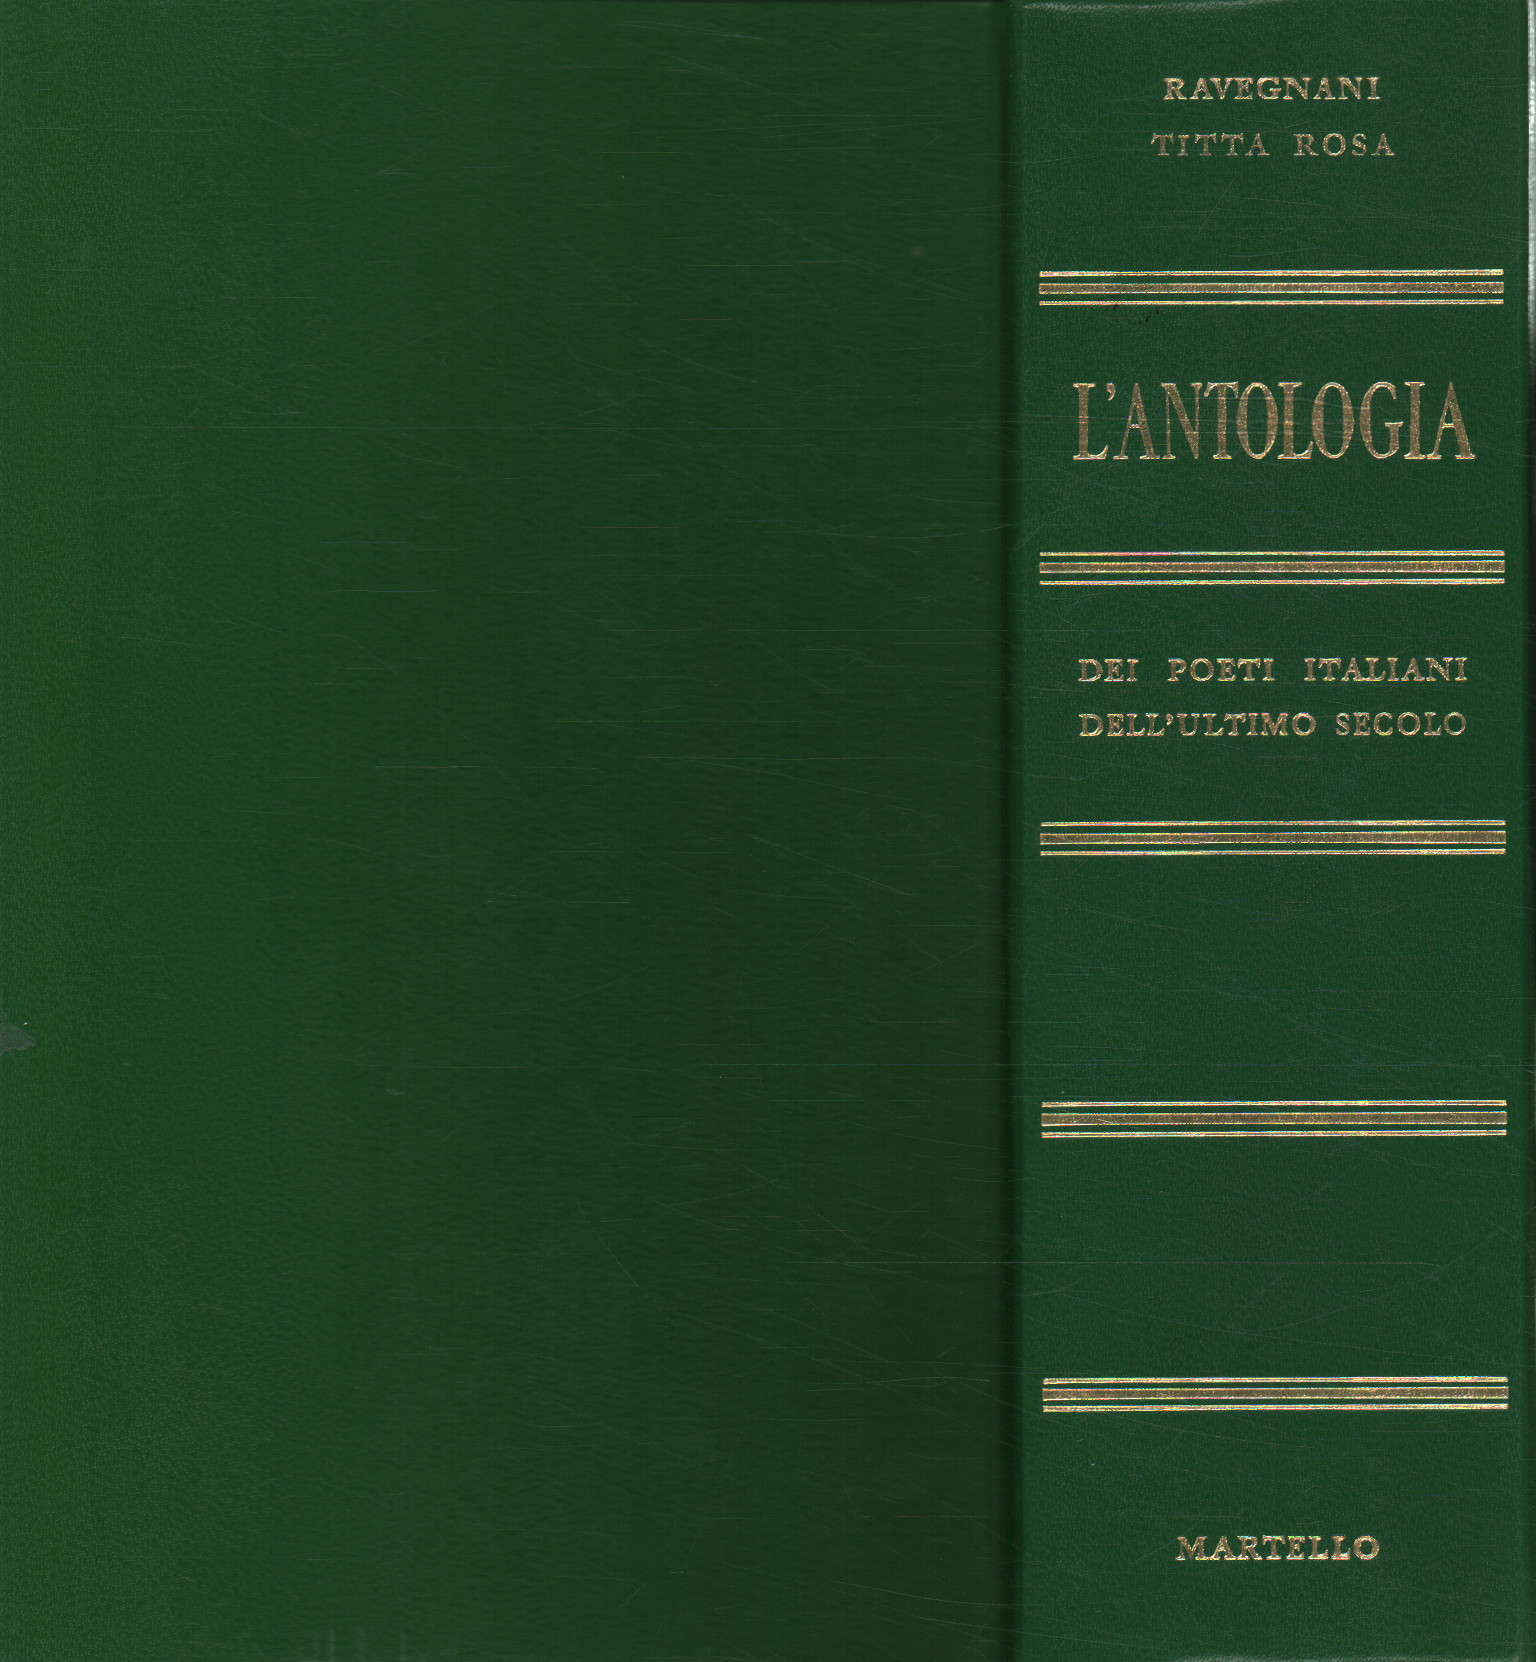 L antologia dei poeti italiani dell ultimo secolo, Giuseppe Ravegnani Giovanni Titta Rosa